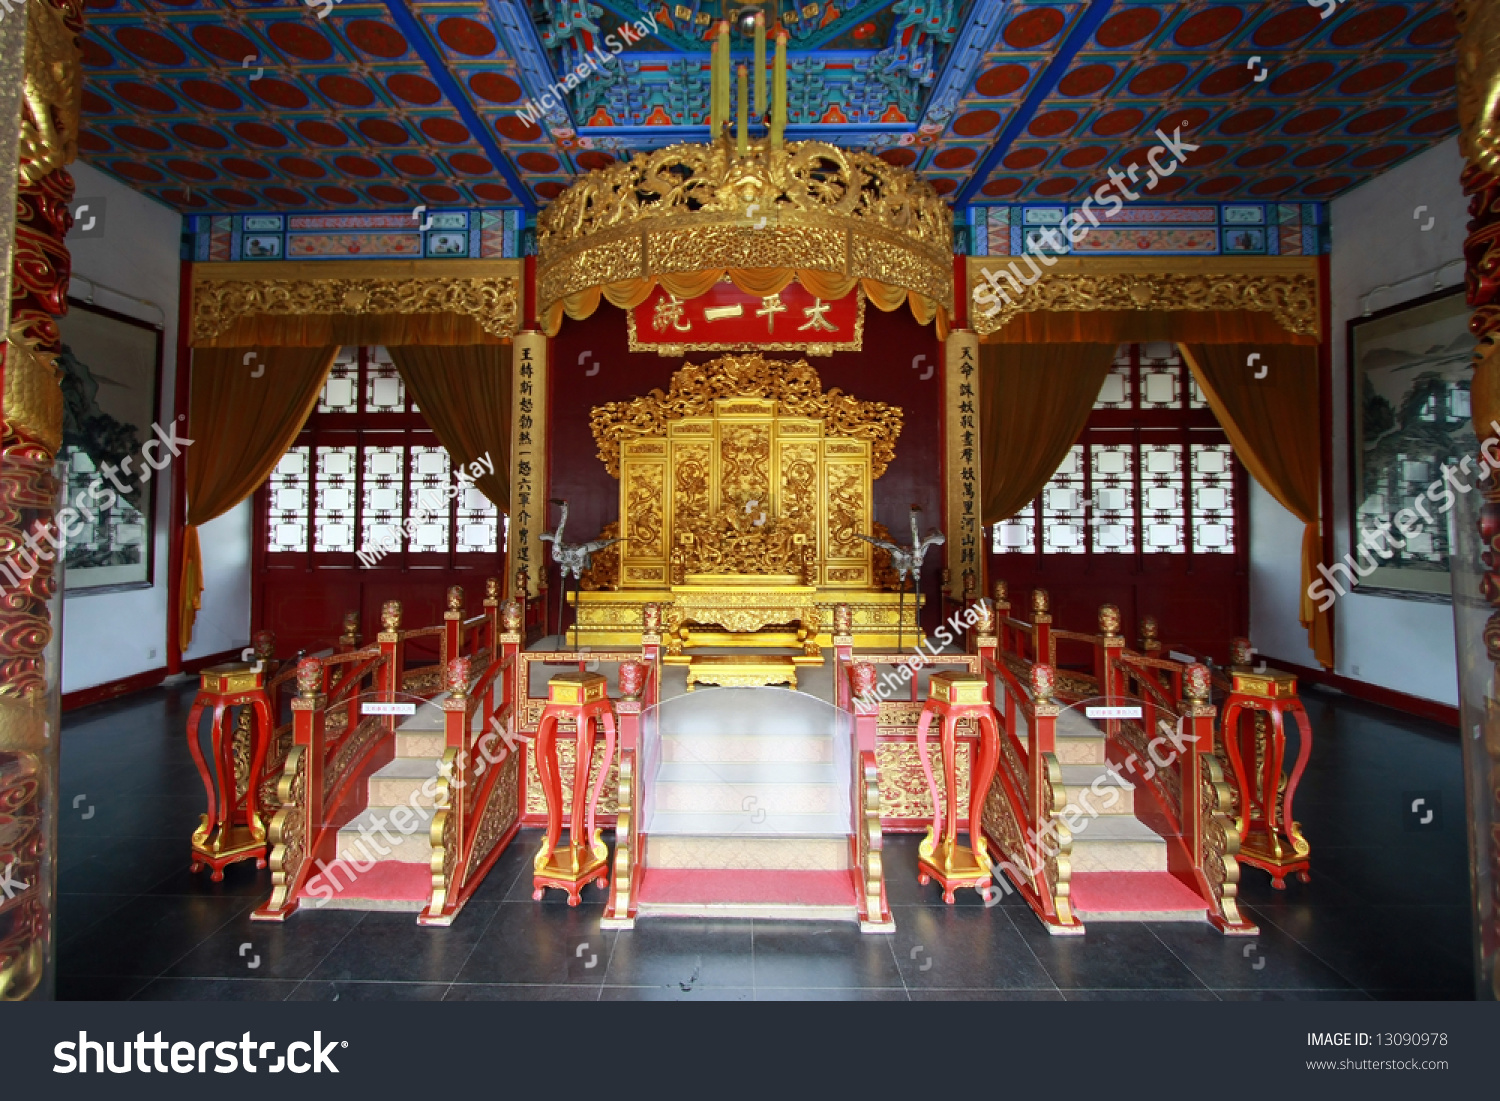 stock-photo-nanjing-throne-room-china-13090978.jpg